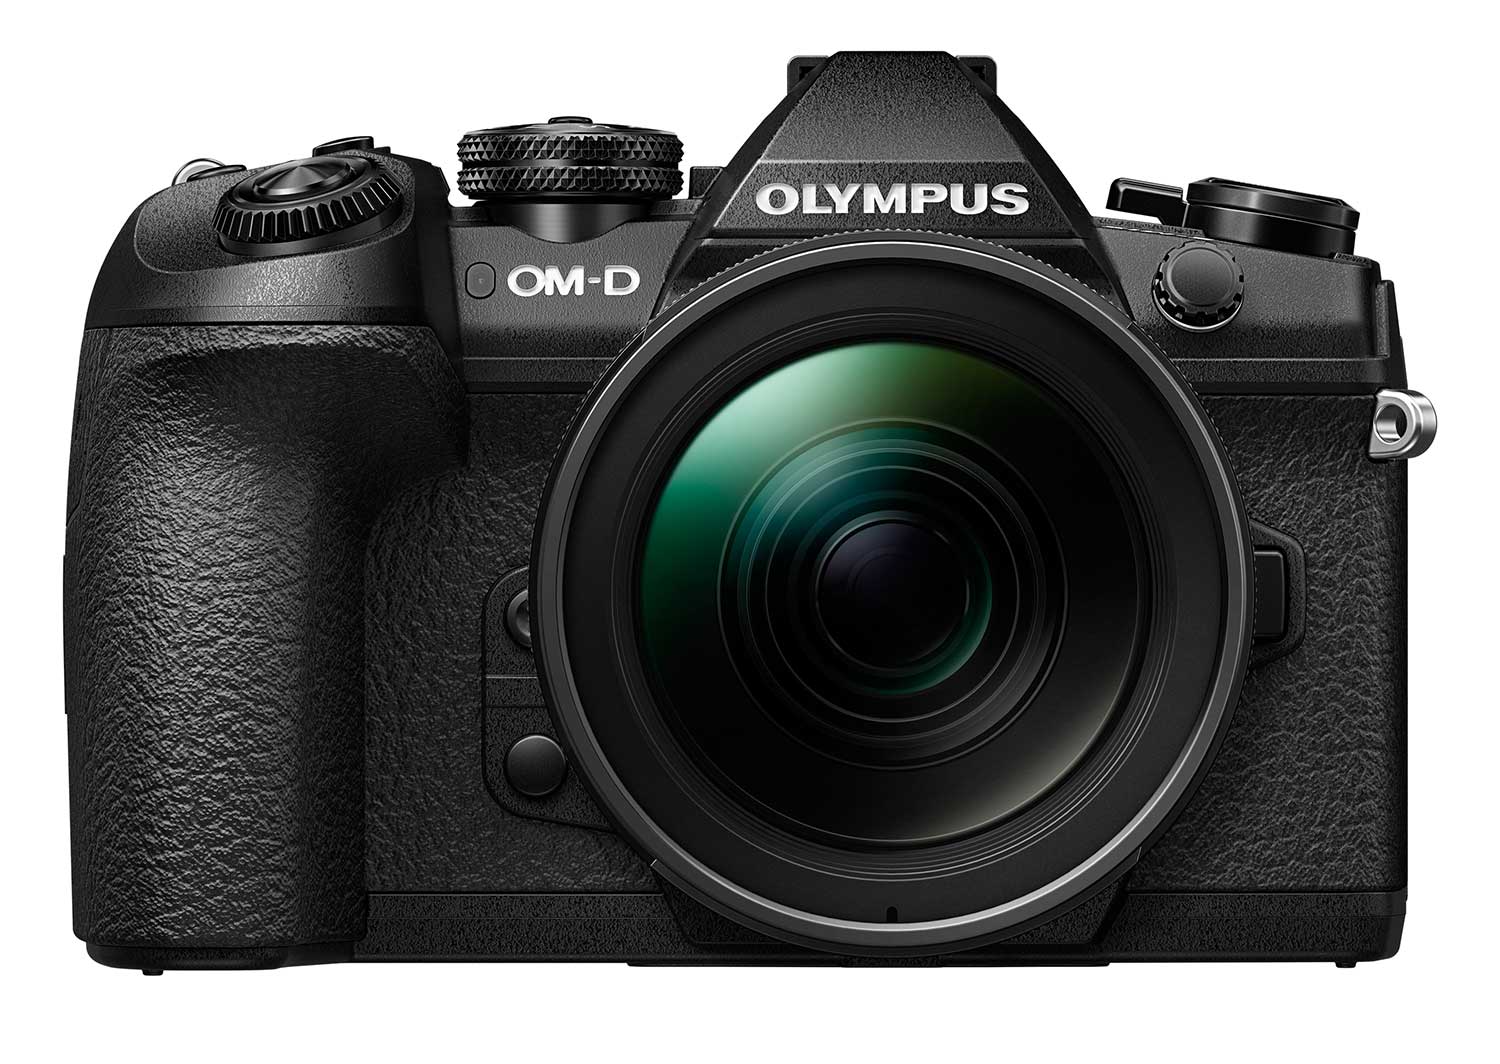 ID: 24474: UPDATE: Olympus OM-D E-M1 Mk II